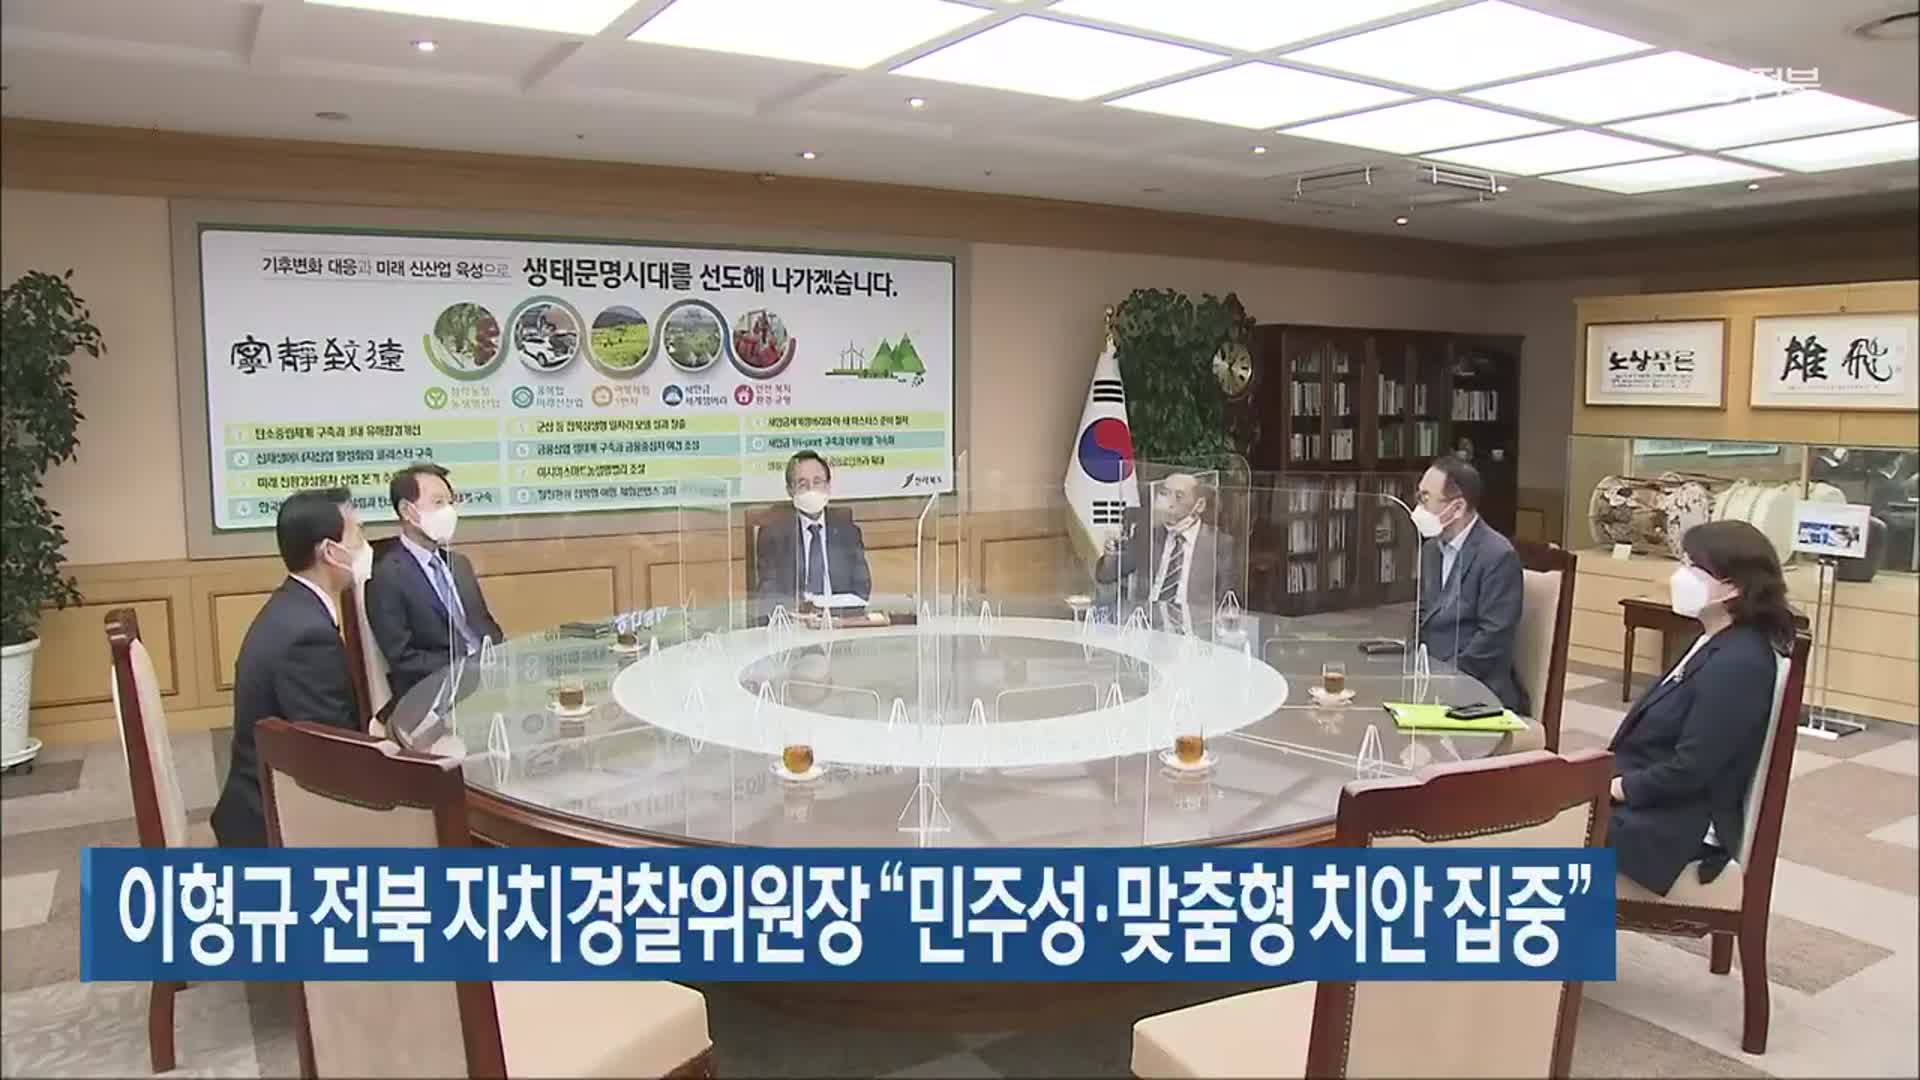 이형규 전북 자치경찰위원장 “민주성·맞춤형 치안 집중”